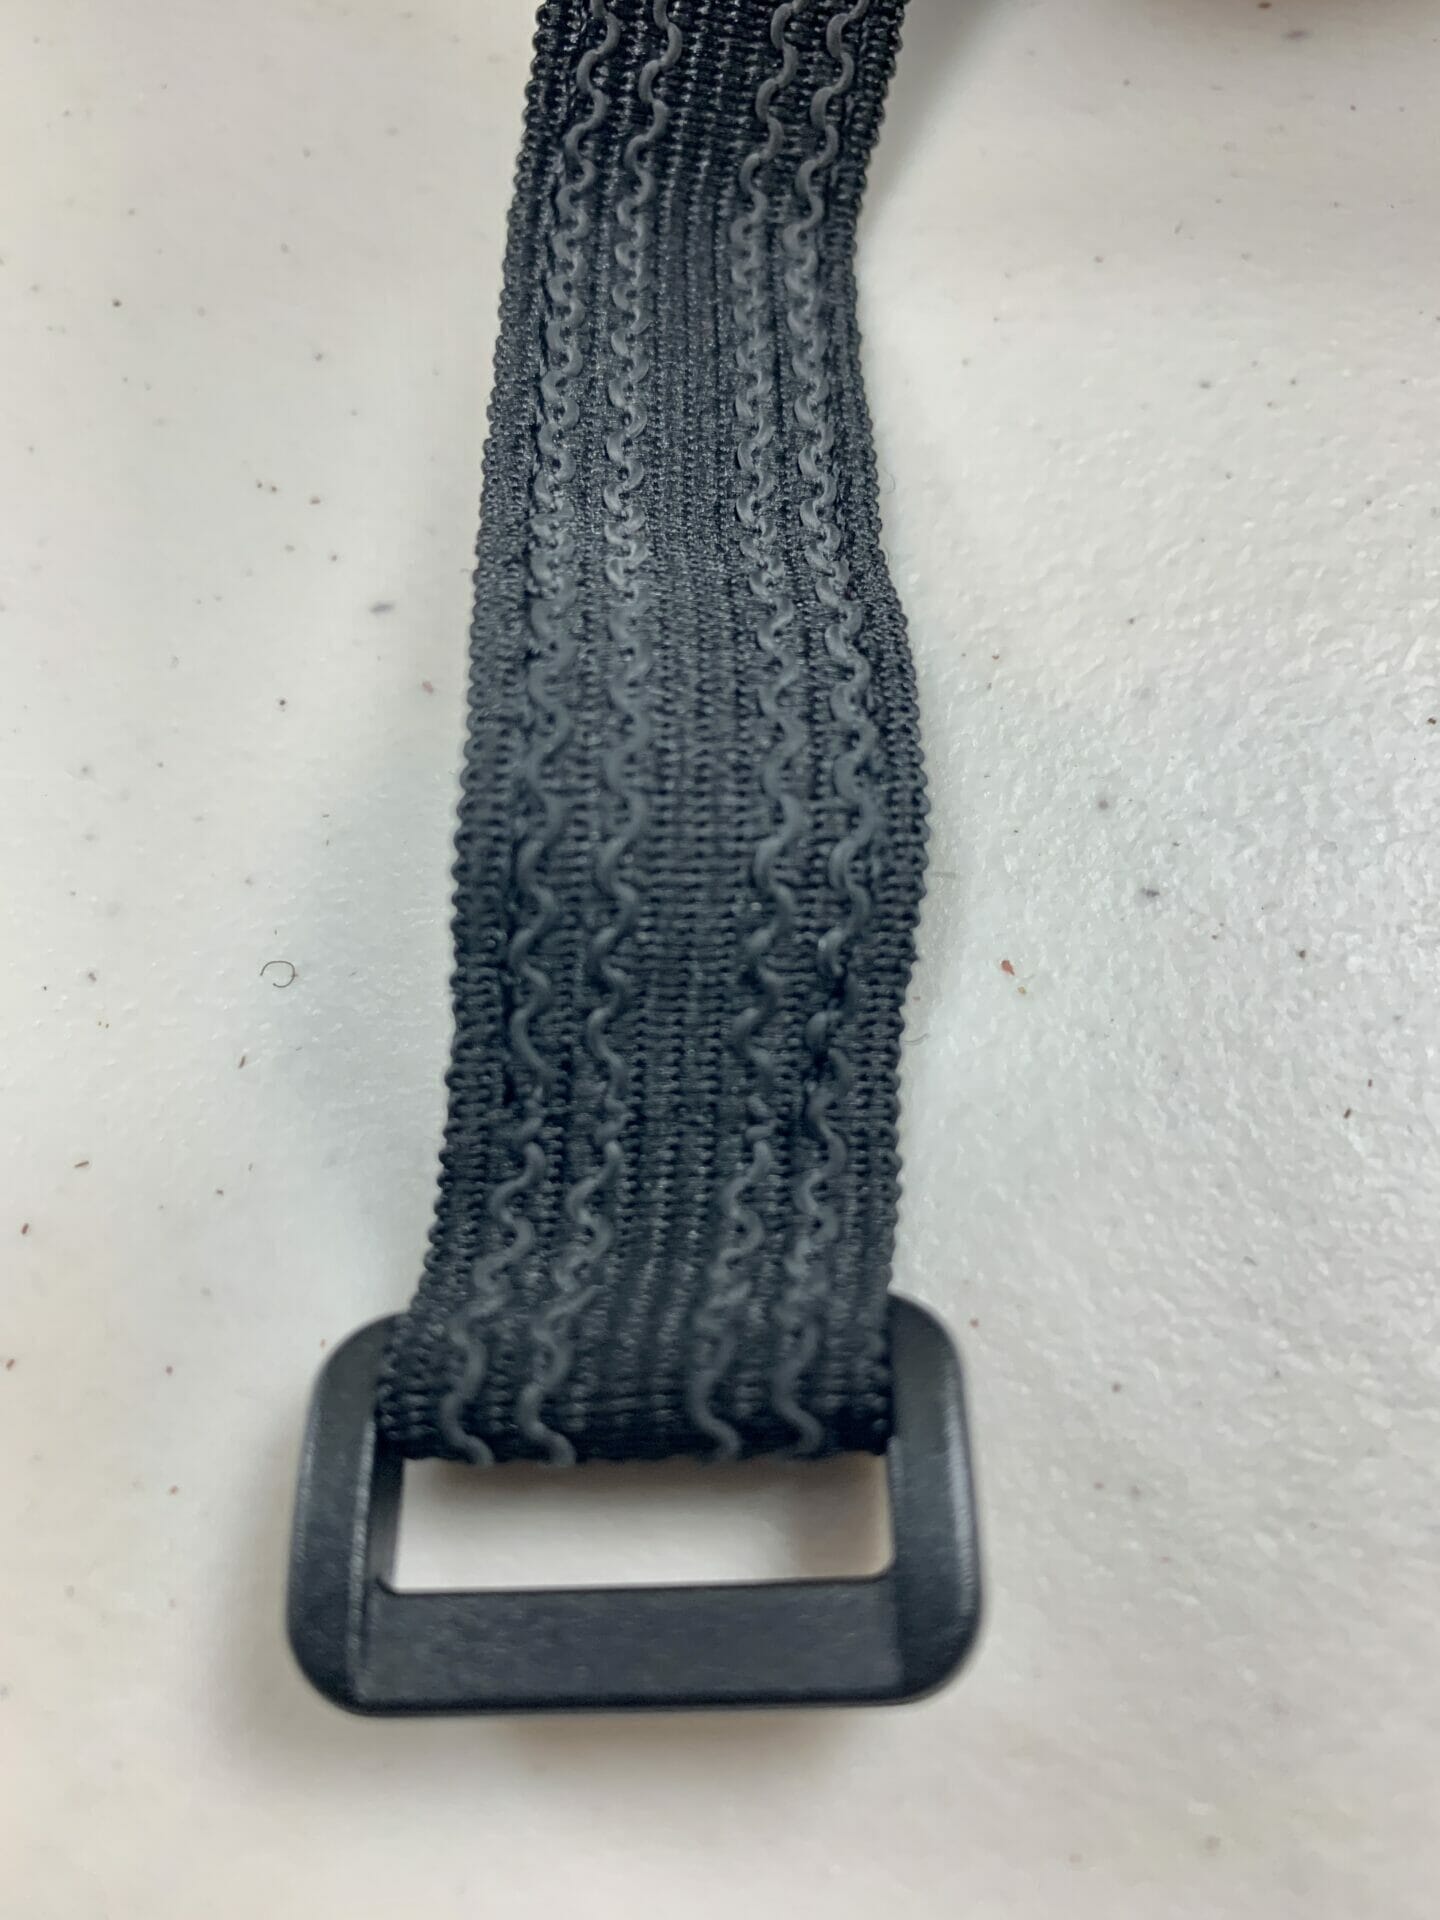 rubber grips on steer tube strap